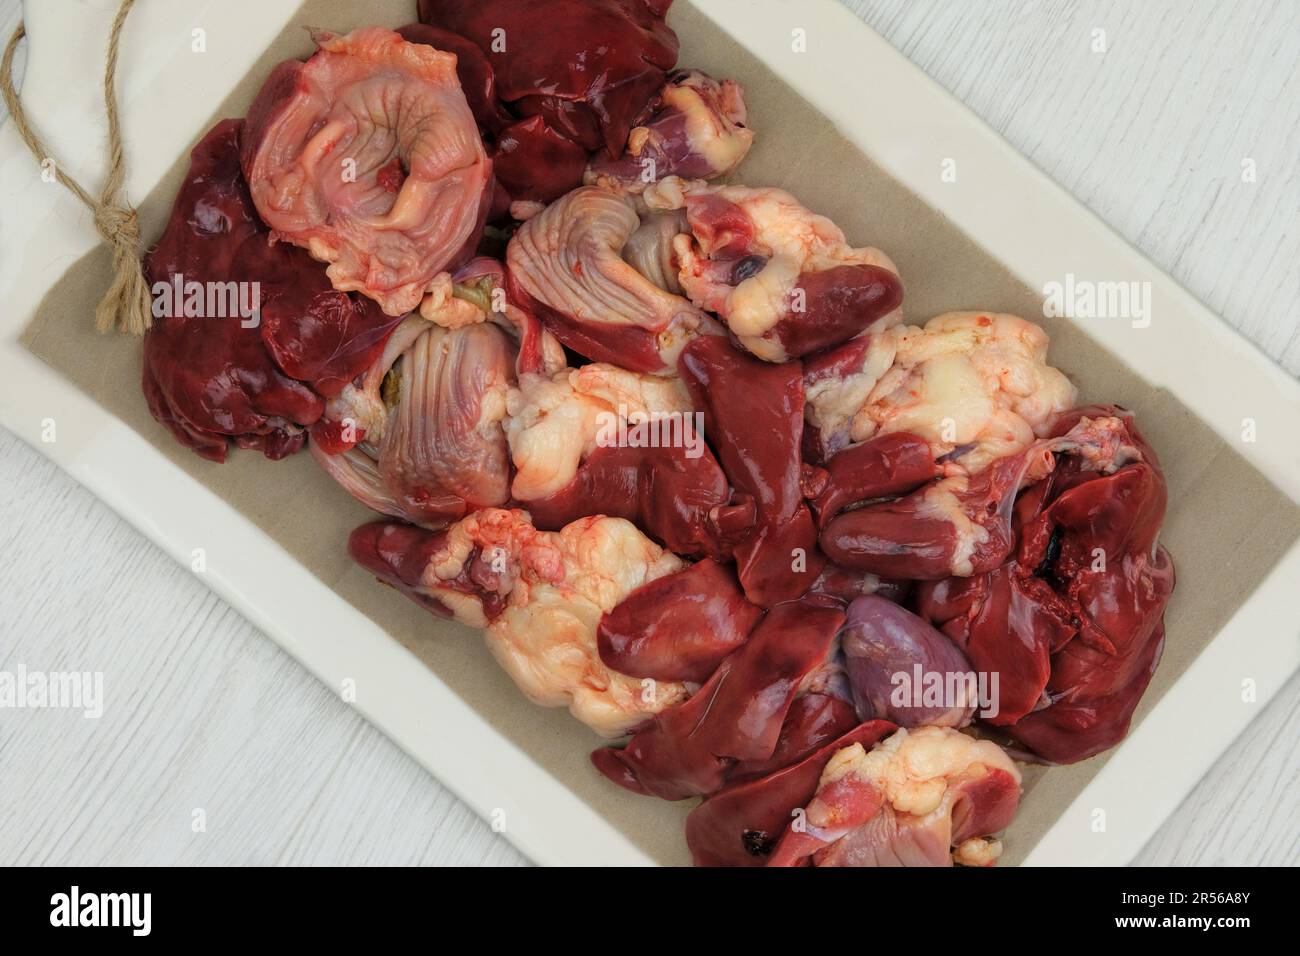 Des abats de poulet crus sur un plateau en céramique. Les estomacs de poulet, les cœurs et les foies sont préparés pour la cuisson. Banque D'Images